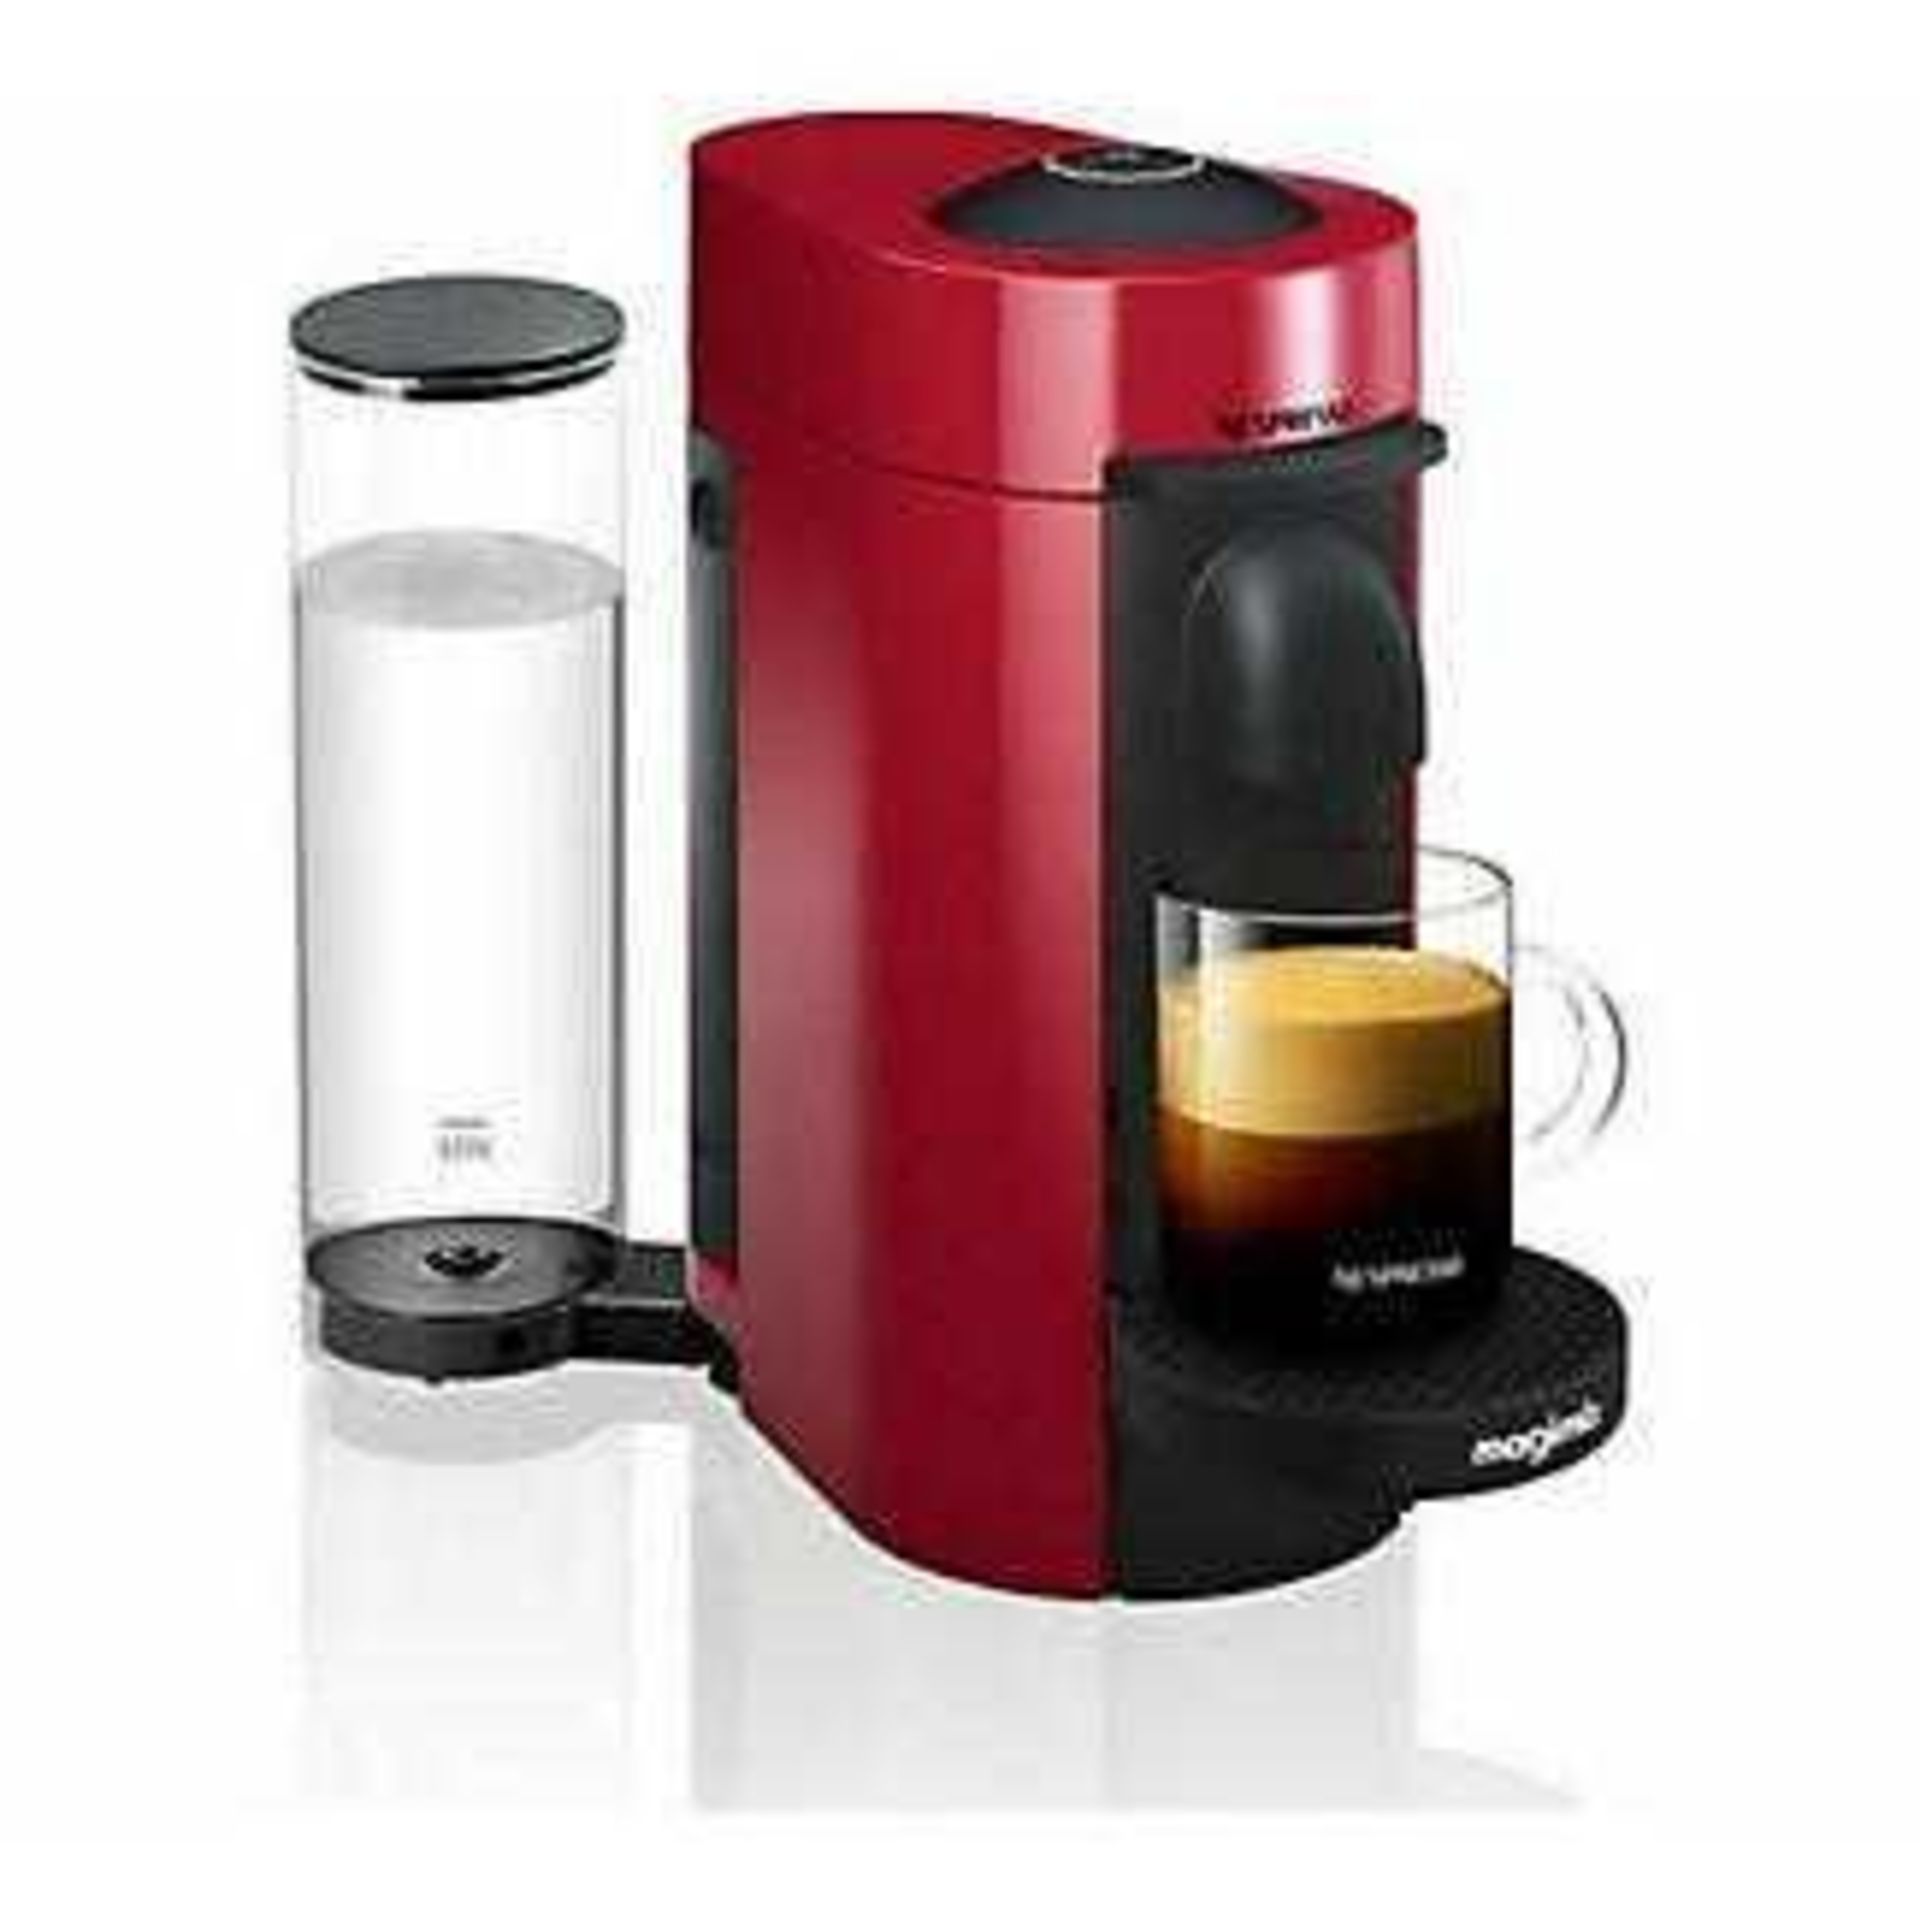 RRP £180 Boxed Nespresso Vertuo Plus Coffee Machine Untested)